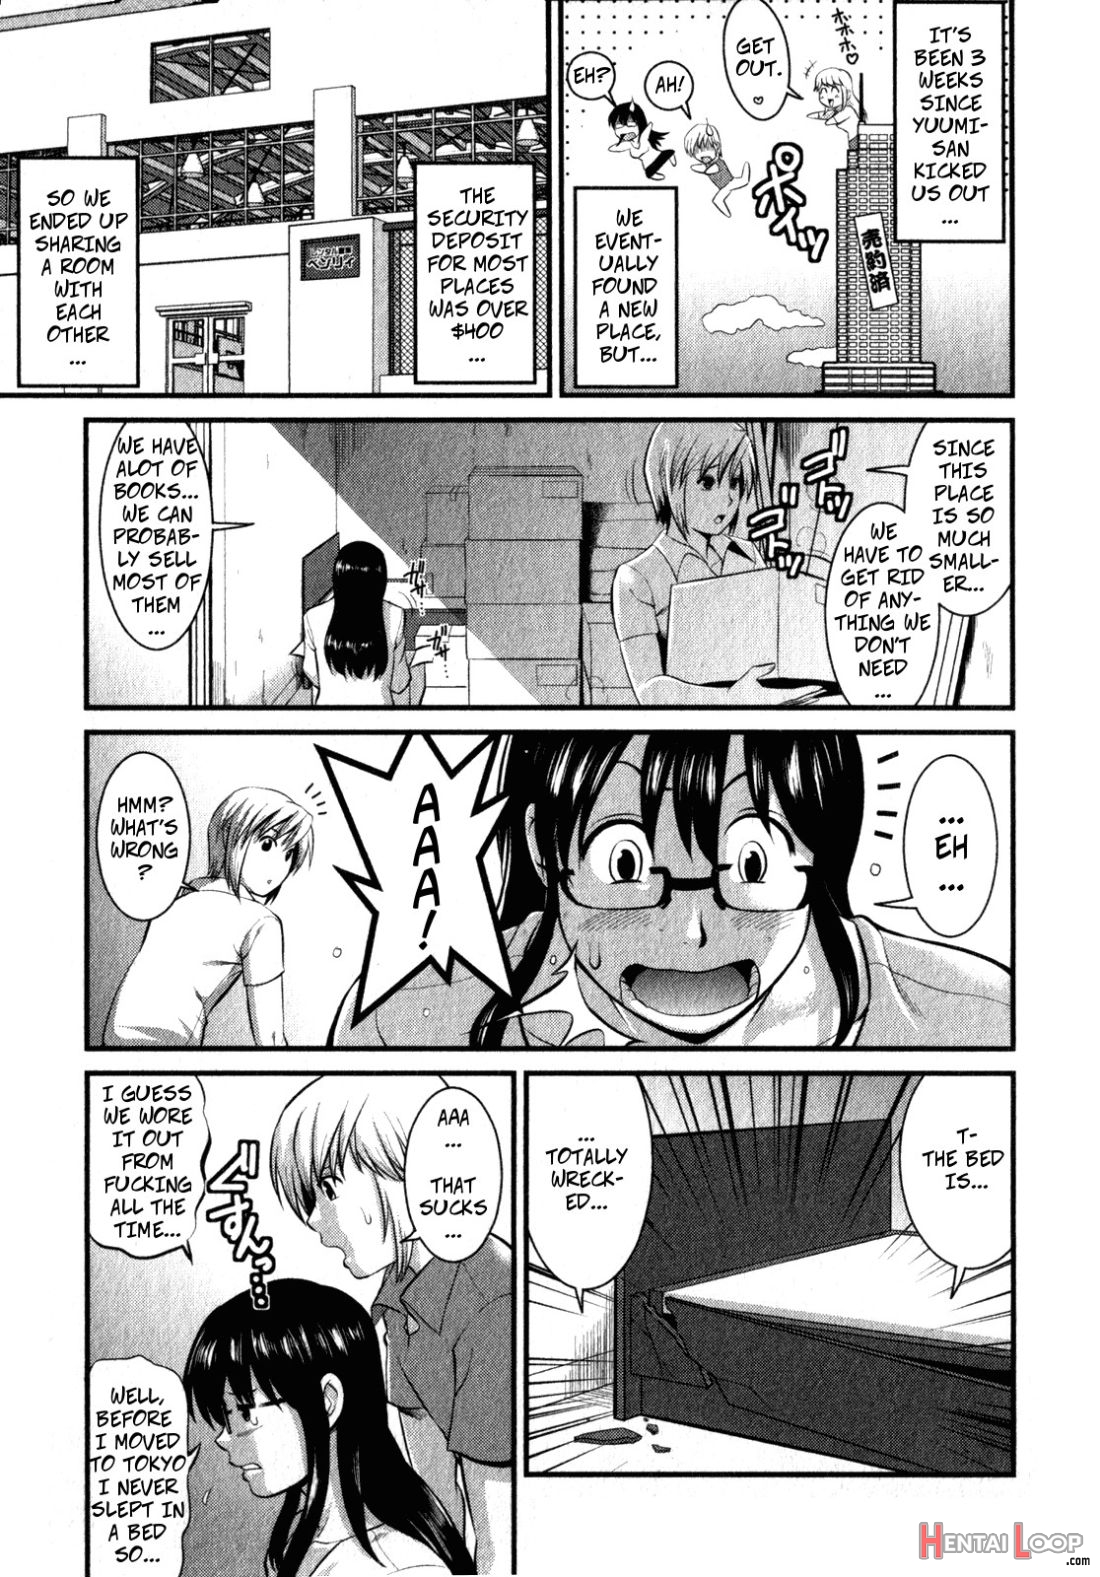 Shizuko-san's Story page 3